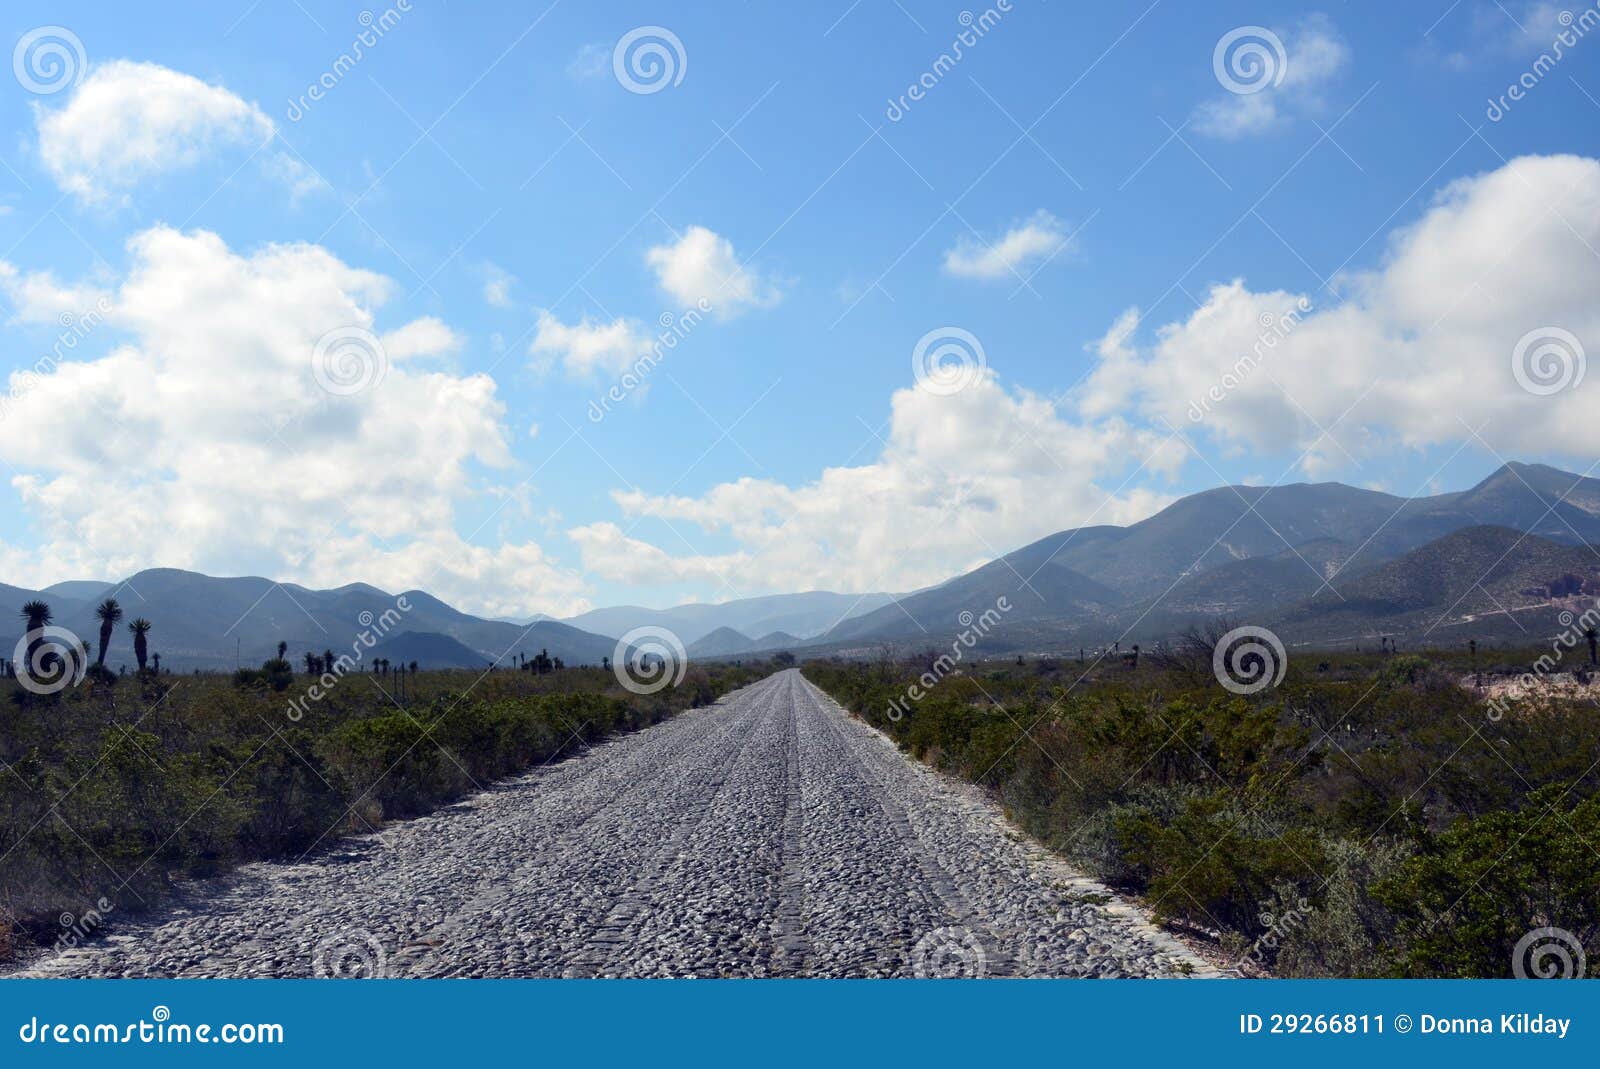 cobblestone road in mexico